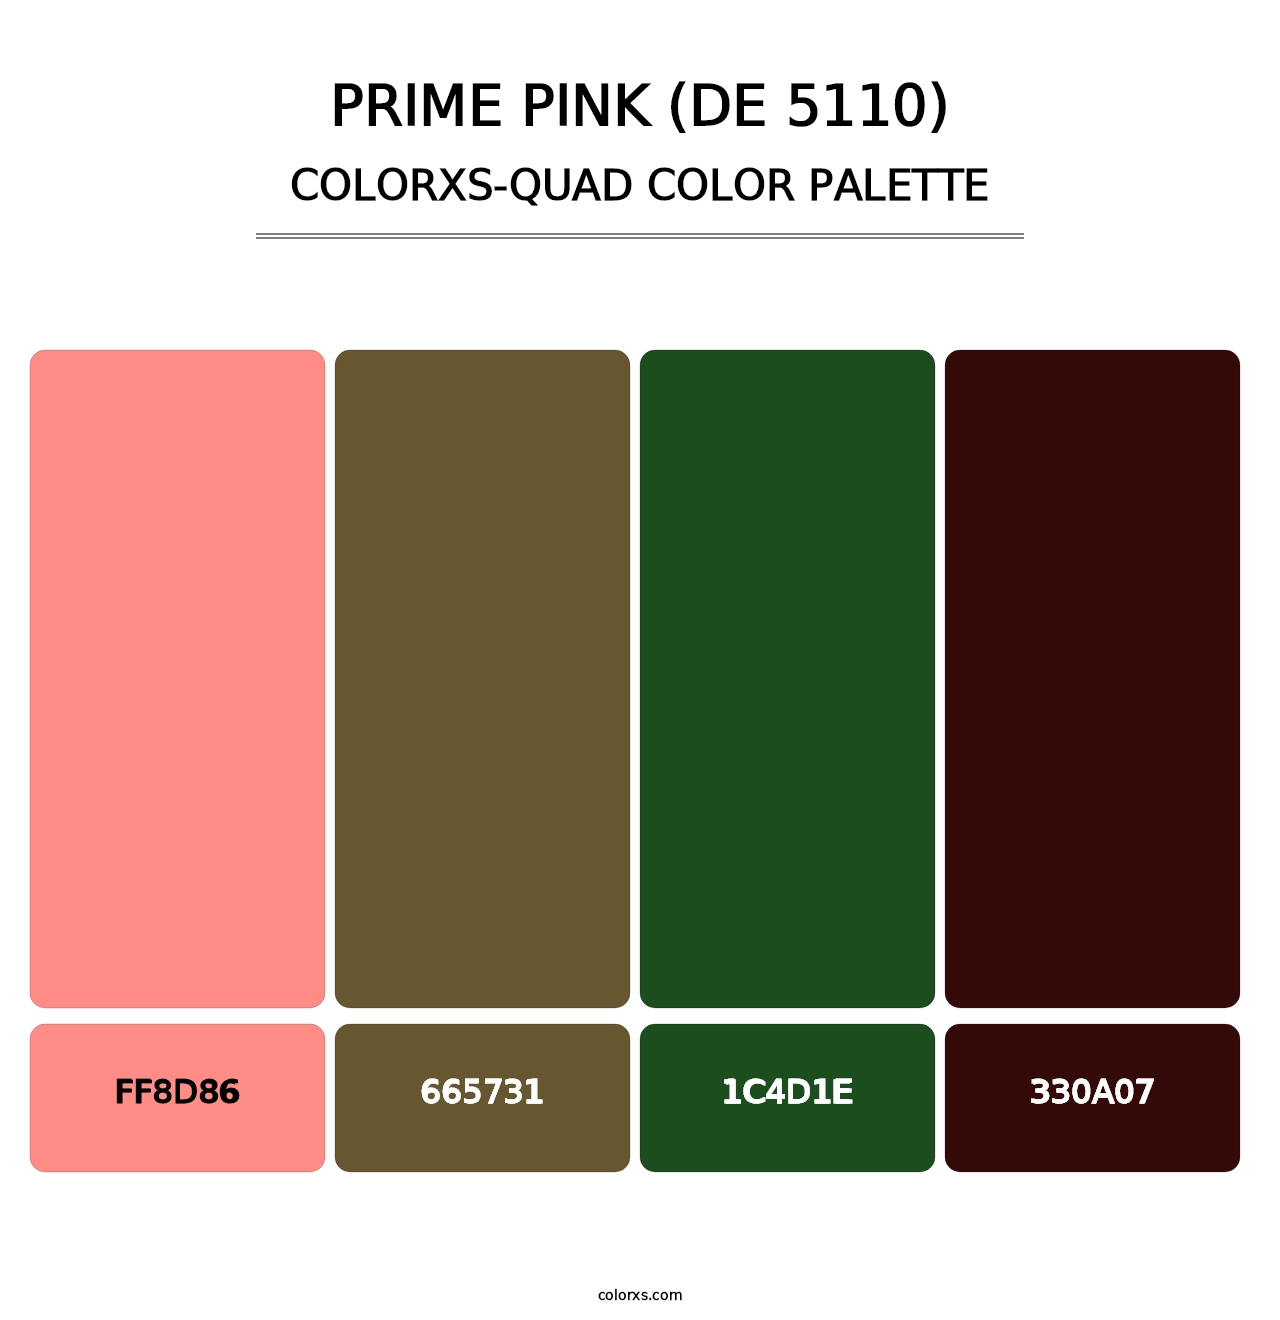 Prime Pink (DE 5110) - Colorxs Quad Palette